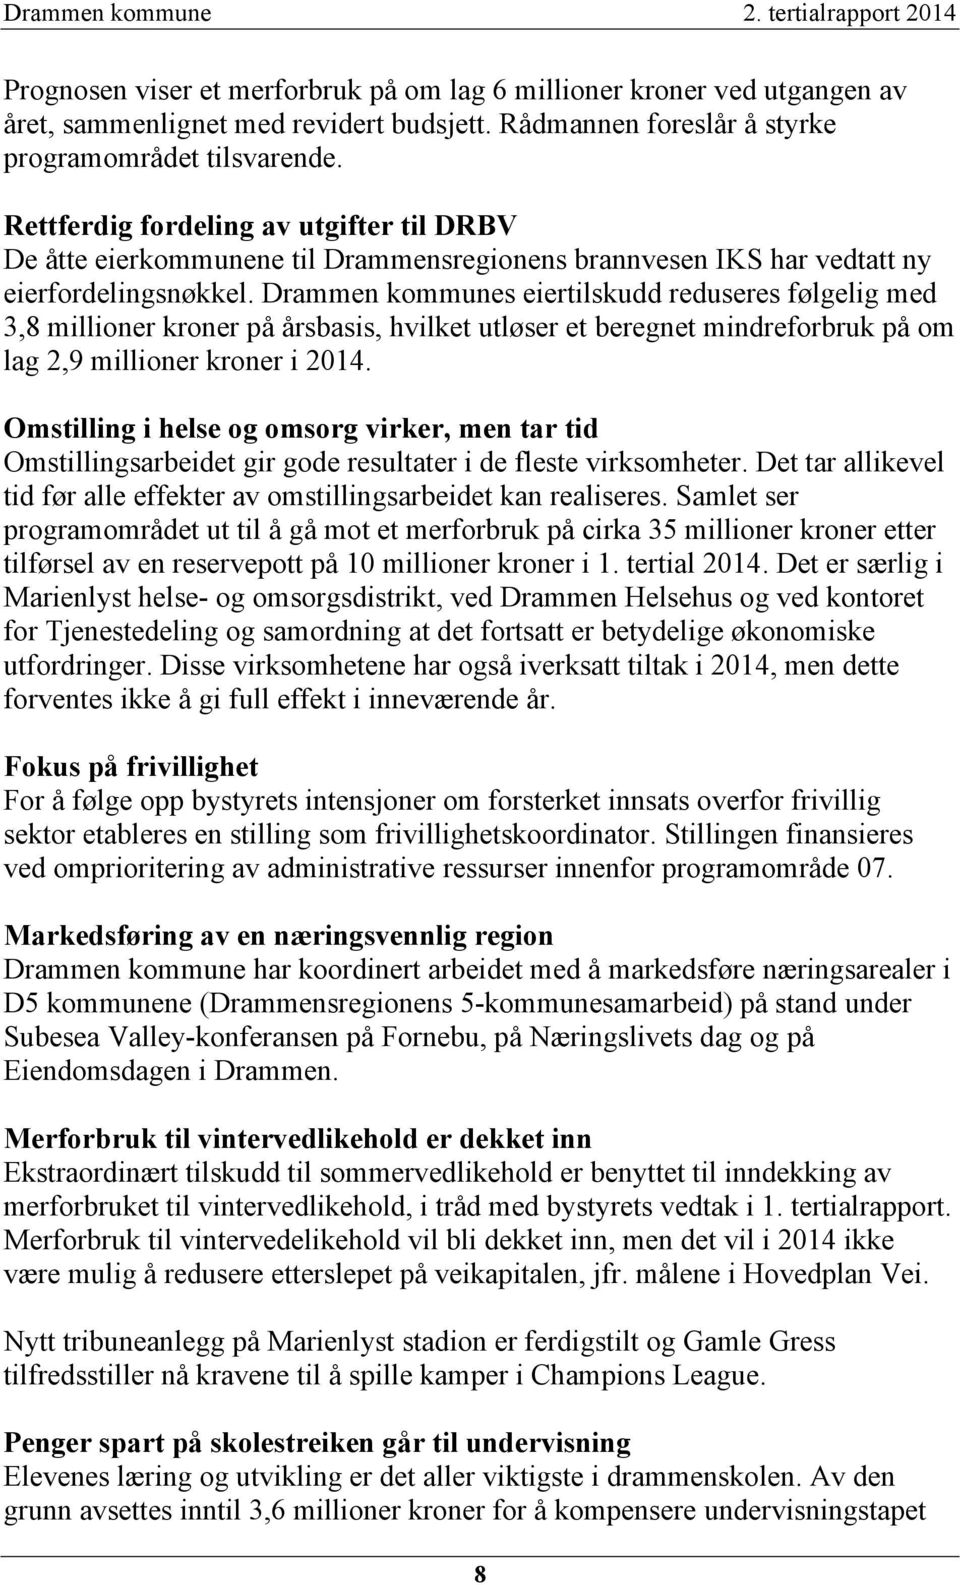 Drammen kommunes eiertilskudd reduseres følgelig med 3,8 millioner kroner på årsbasis, hvilket utløser et beregnet mindreforbruk på om lag 2,9 millioner kroner i 2014.